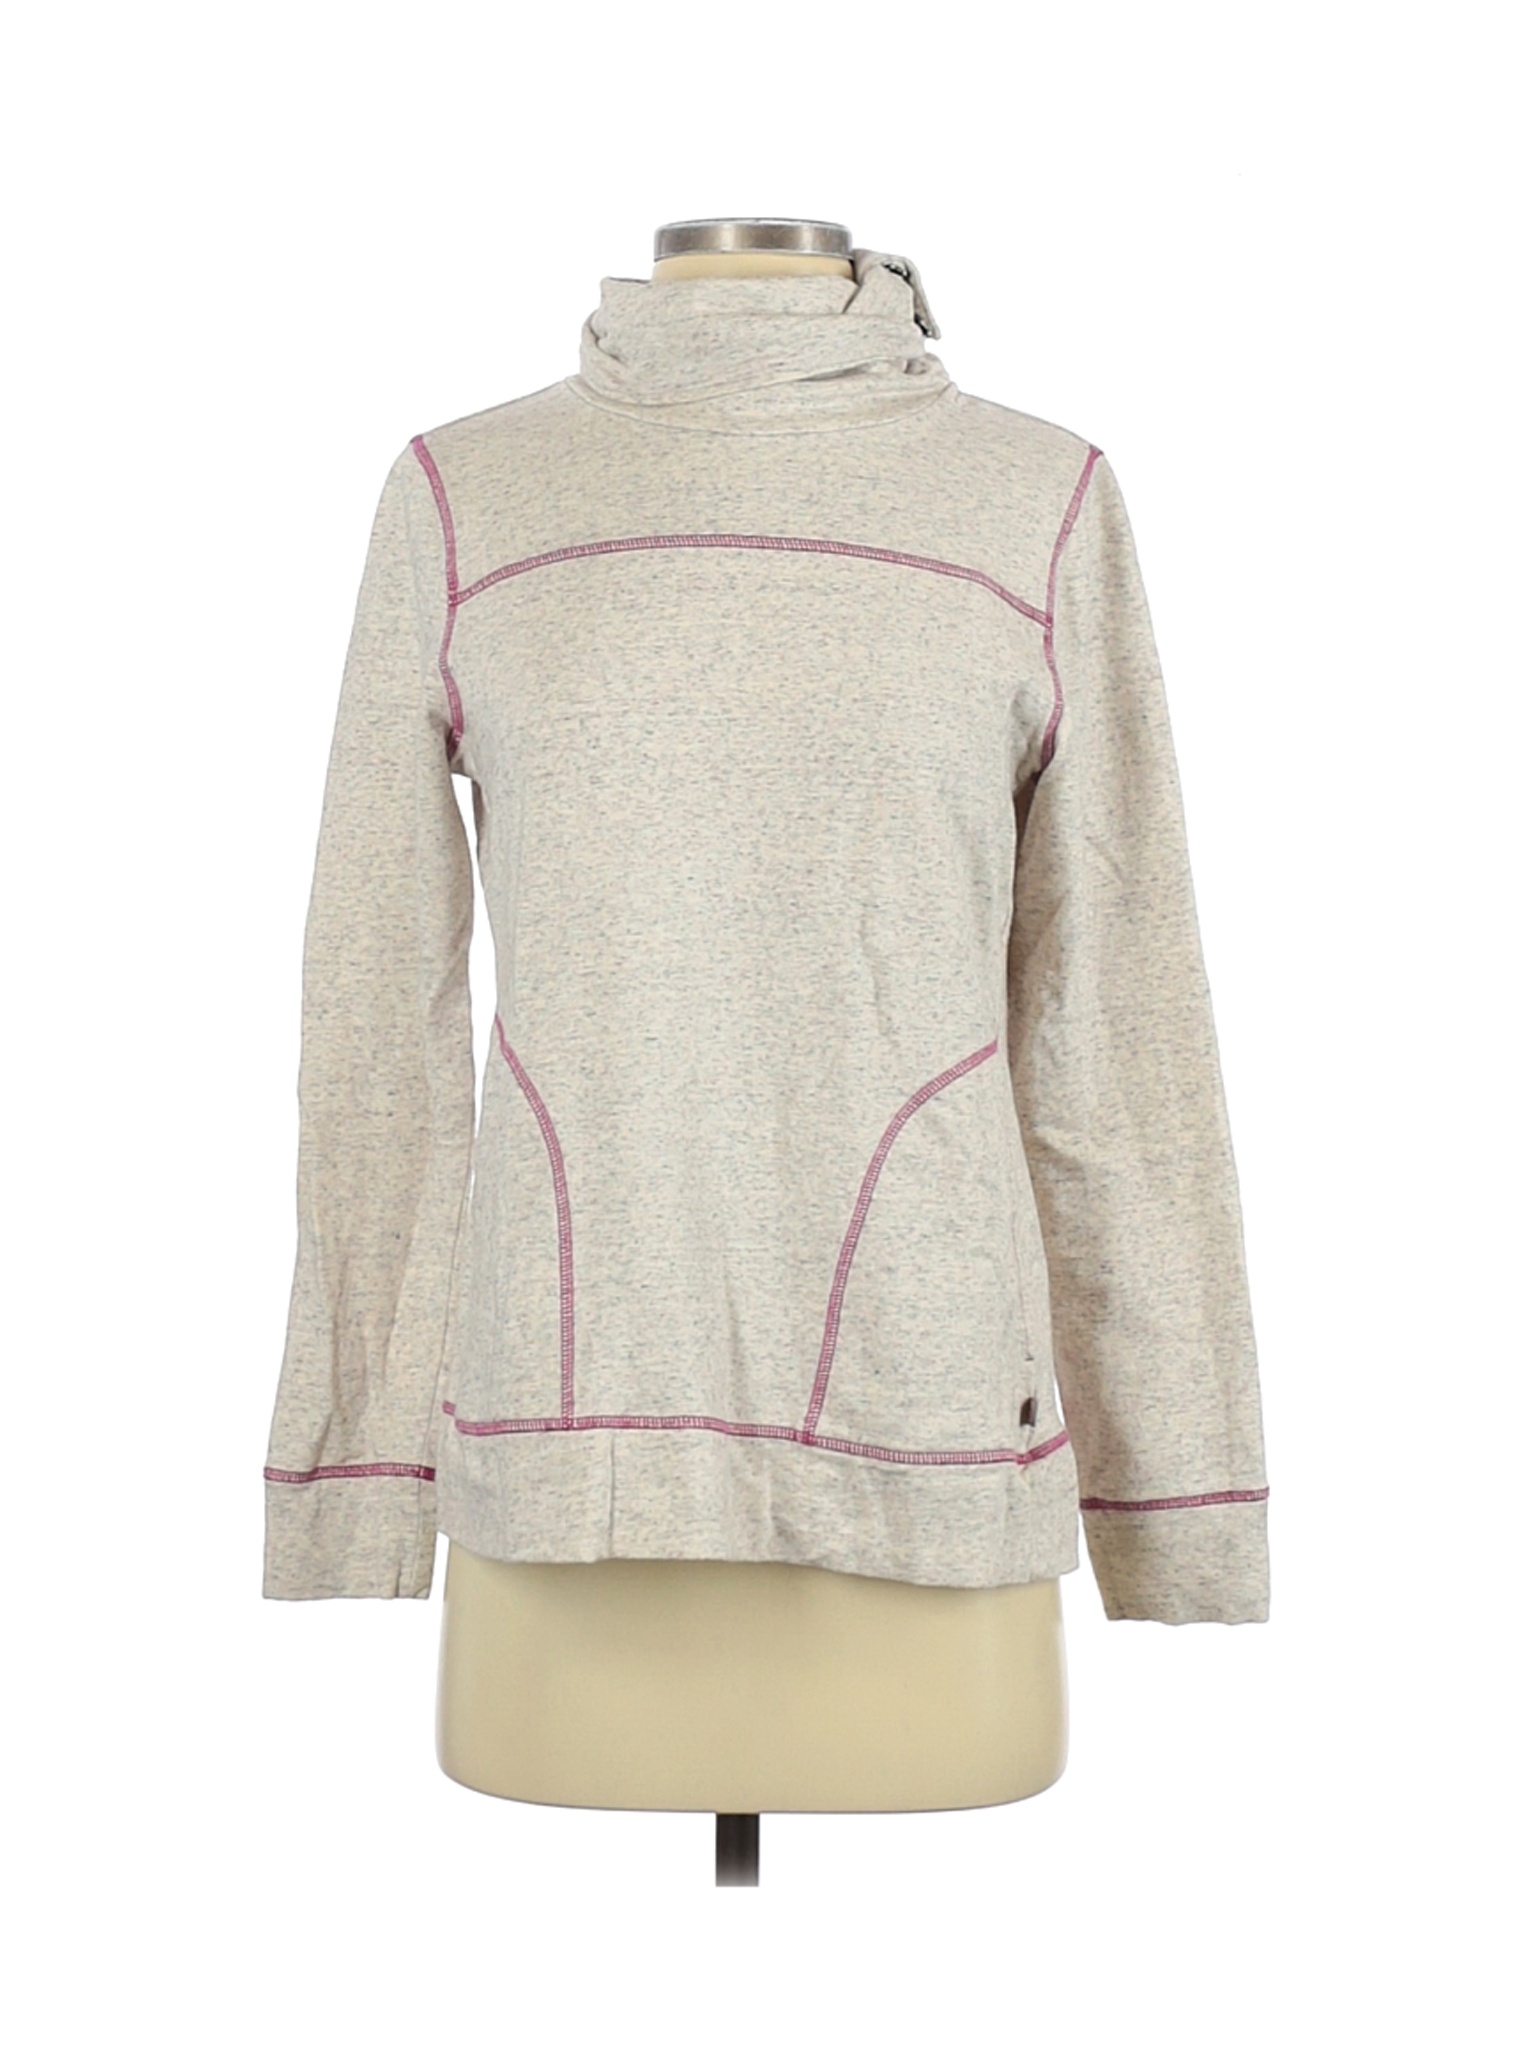 T by Talbots Women Ivory Sweatshirt S | eBay